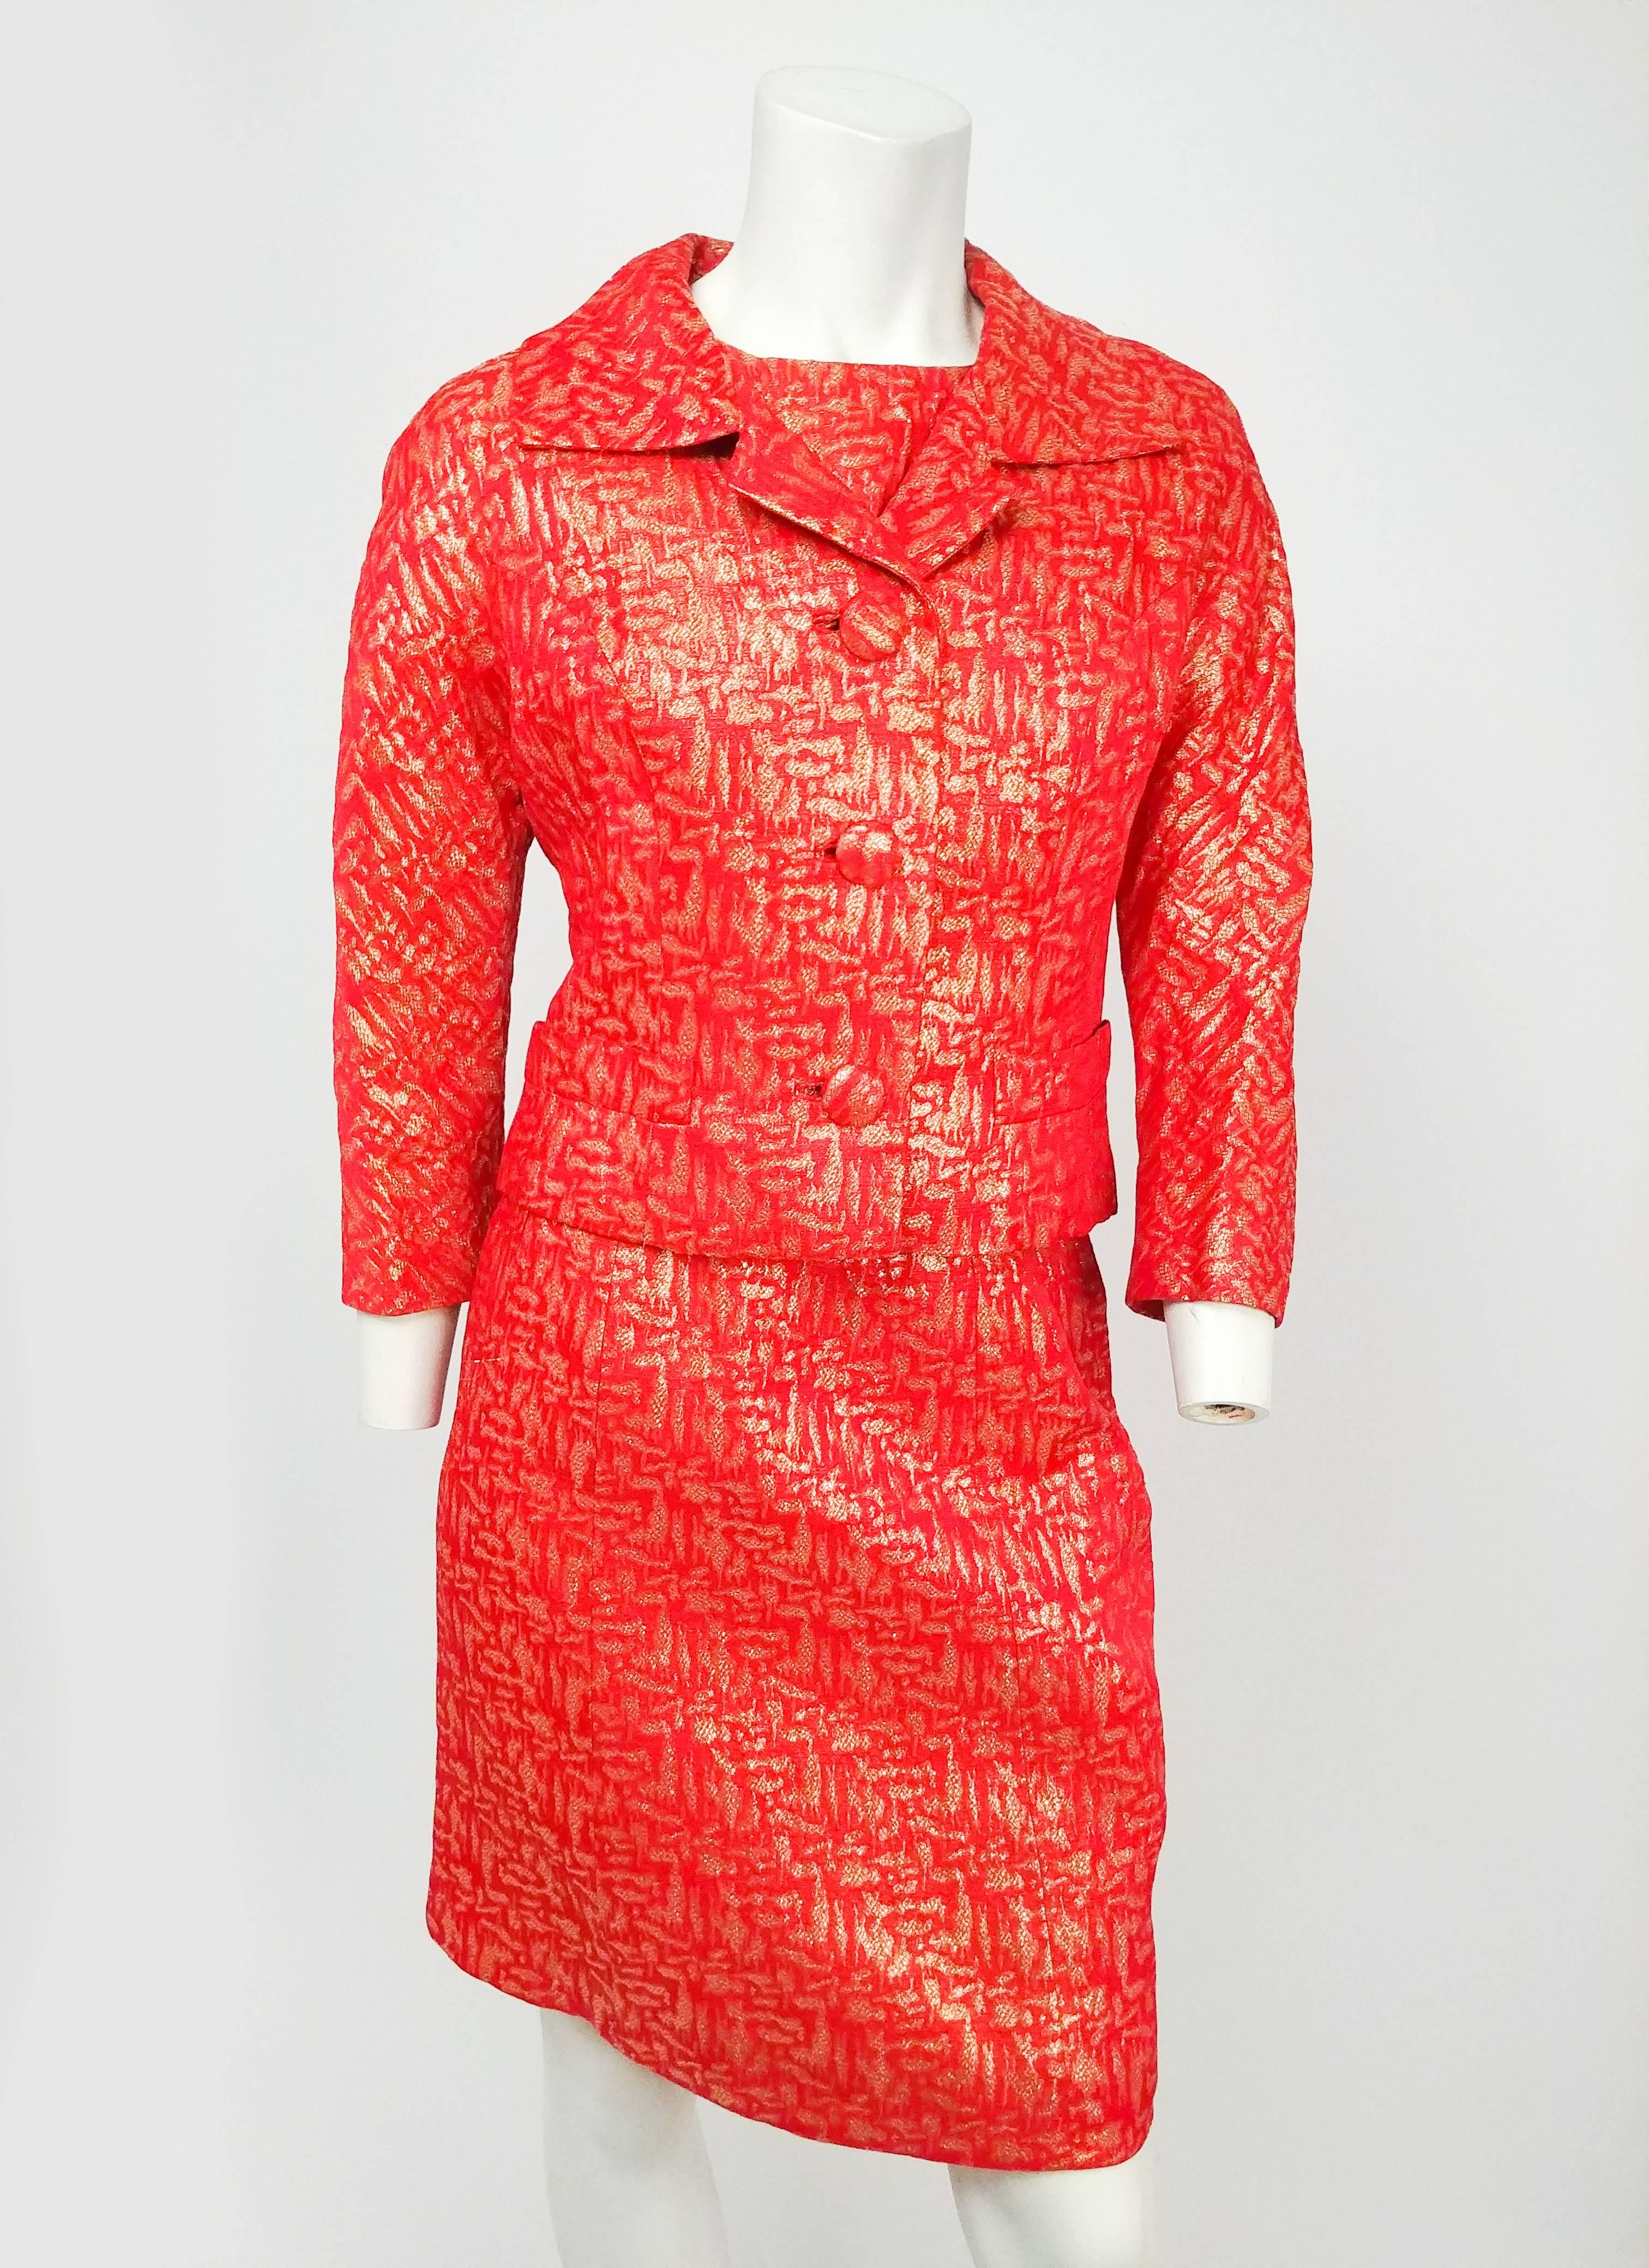 1960s Red & Gold Brocade Jacket, Top, & Skirt Suit Set. Ensemble trois pièces assorti en rouge avec des fils métalliques dorés tissés sur toute la surface. La veste est dotée d'un col cranté traditionnel et de boutons recouverts sur le devant. Les